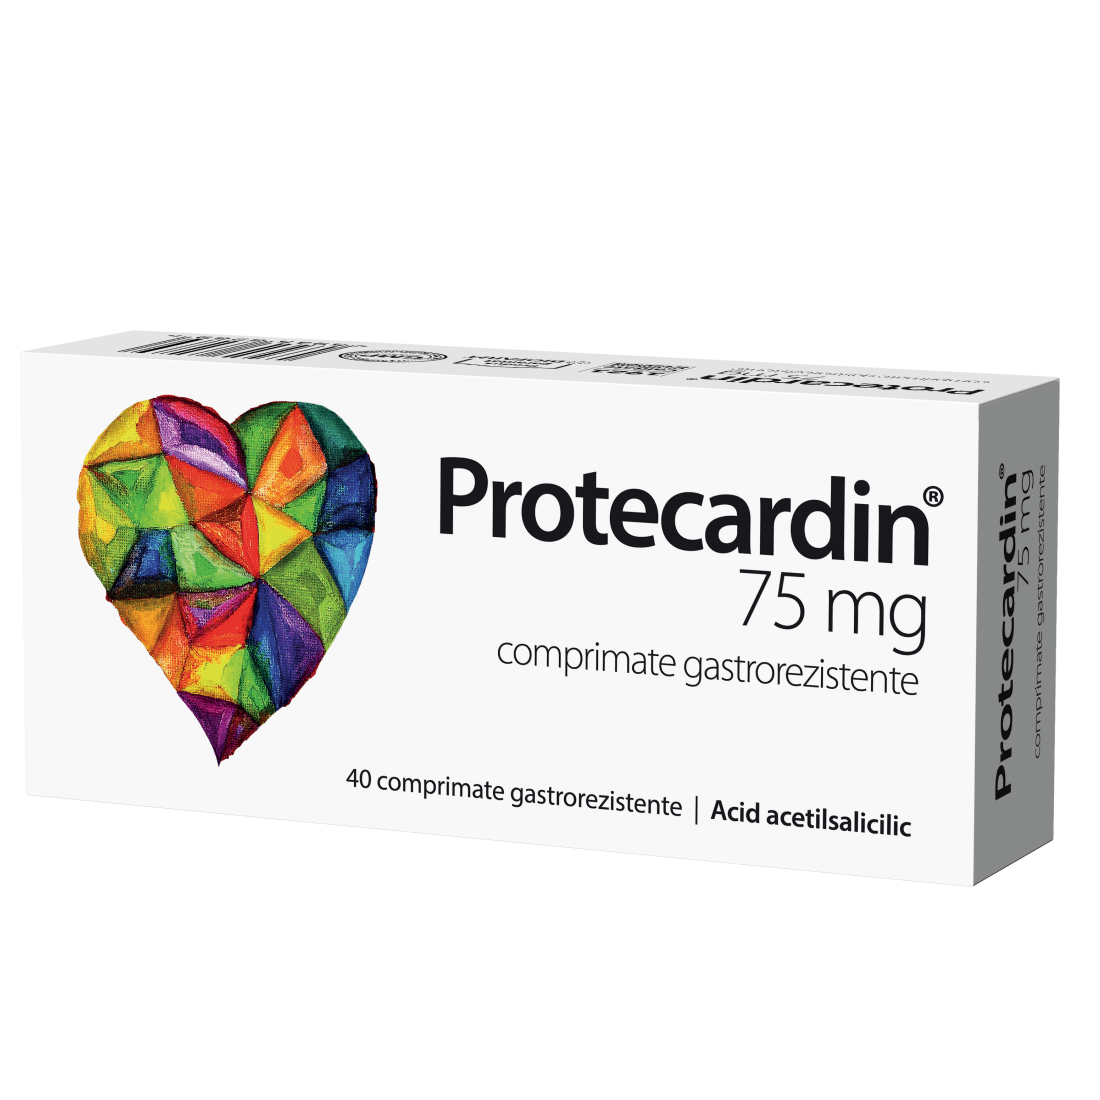 Protecardin, 75 mg, 40 comprimate gastrorezistente, Biofarm